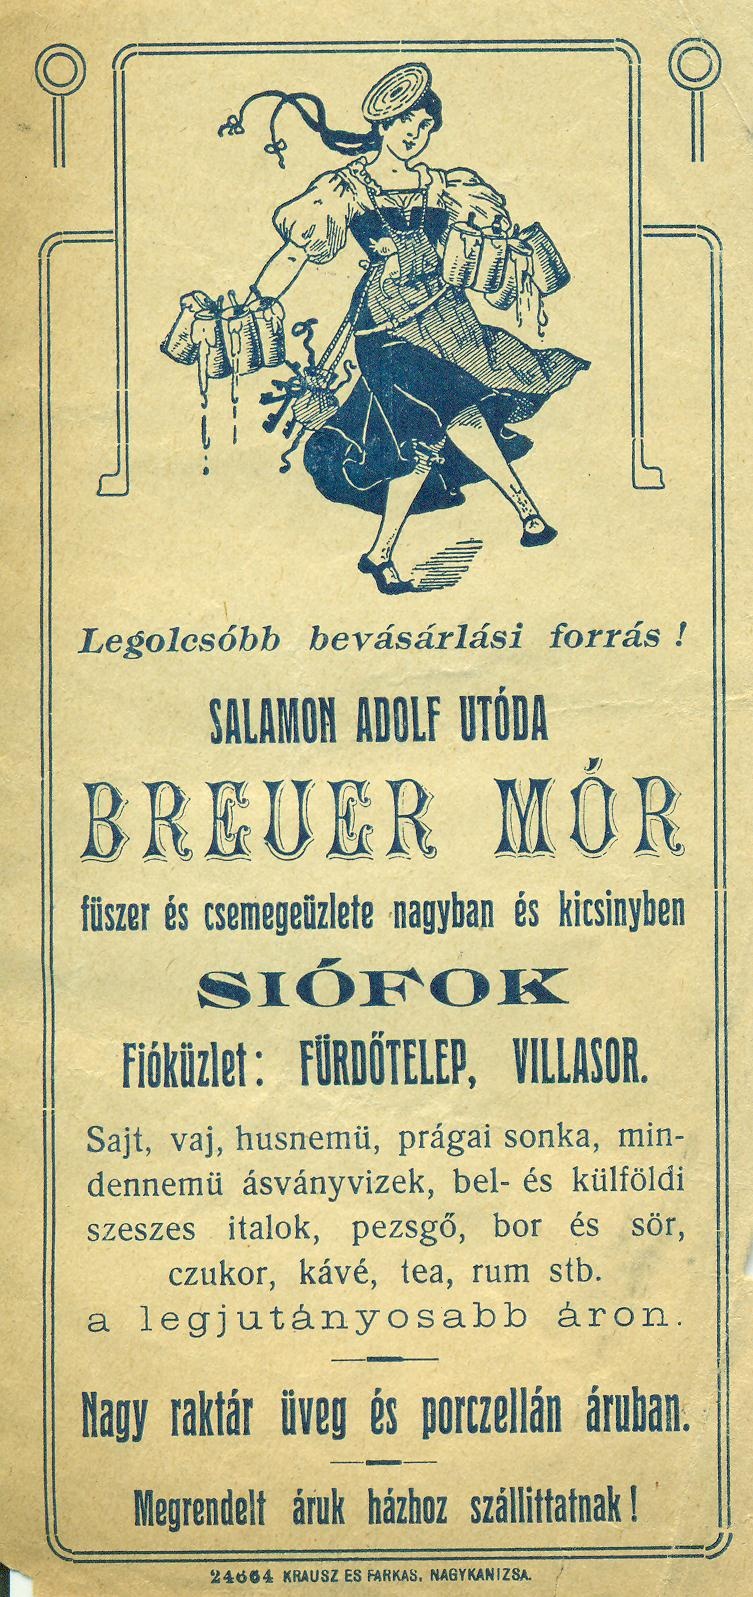 Breuer Mór fűszer- és csemege- kis és nagykereskedés (Magyar Kereskedelmi és Vendéglátóipari Múzeum CC BY-NC-SA)